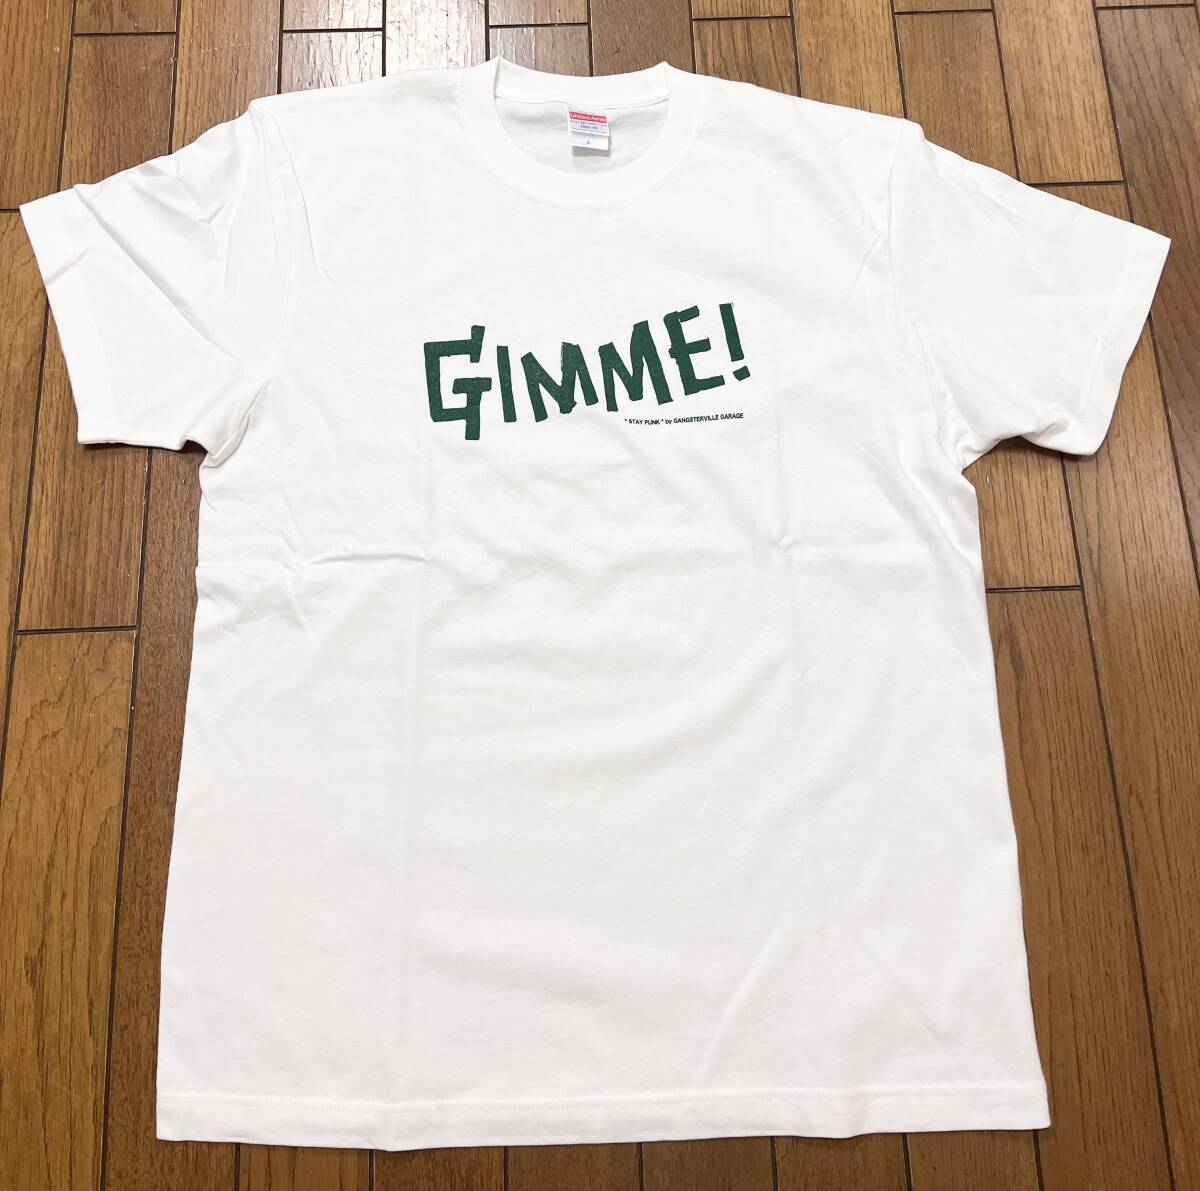 新品 THE FACE GANGSTERVILLE ギャングスタービル GIMME! Tシャツ サイズ L ホワイト 検 ロカビリー MACKSHOW マックショウ _画像1